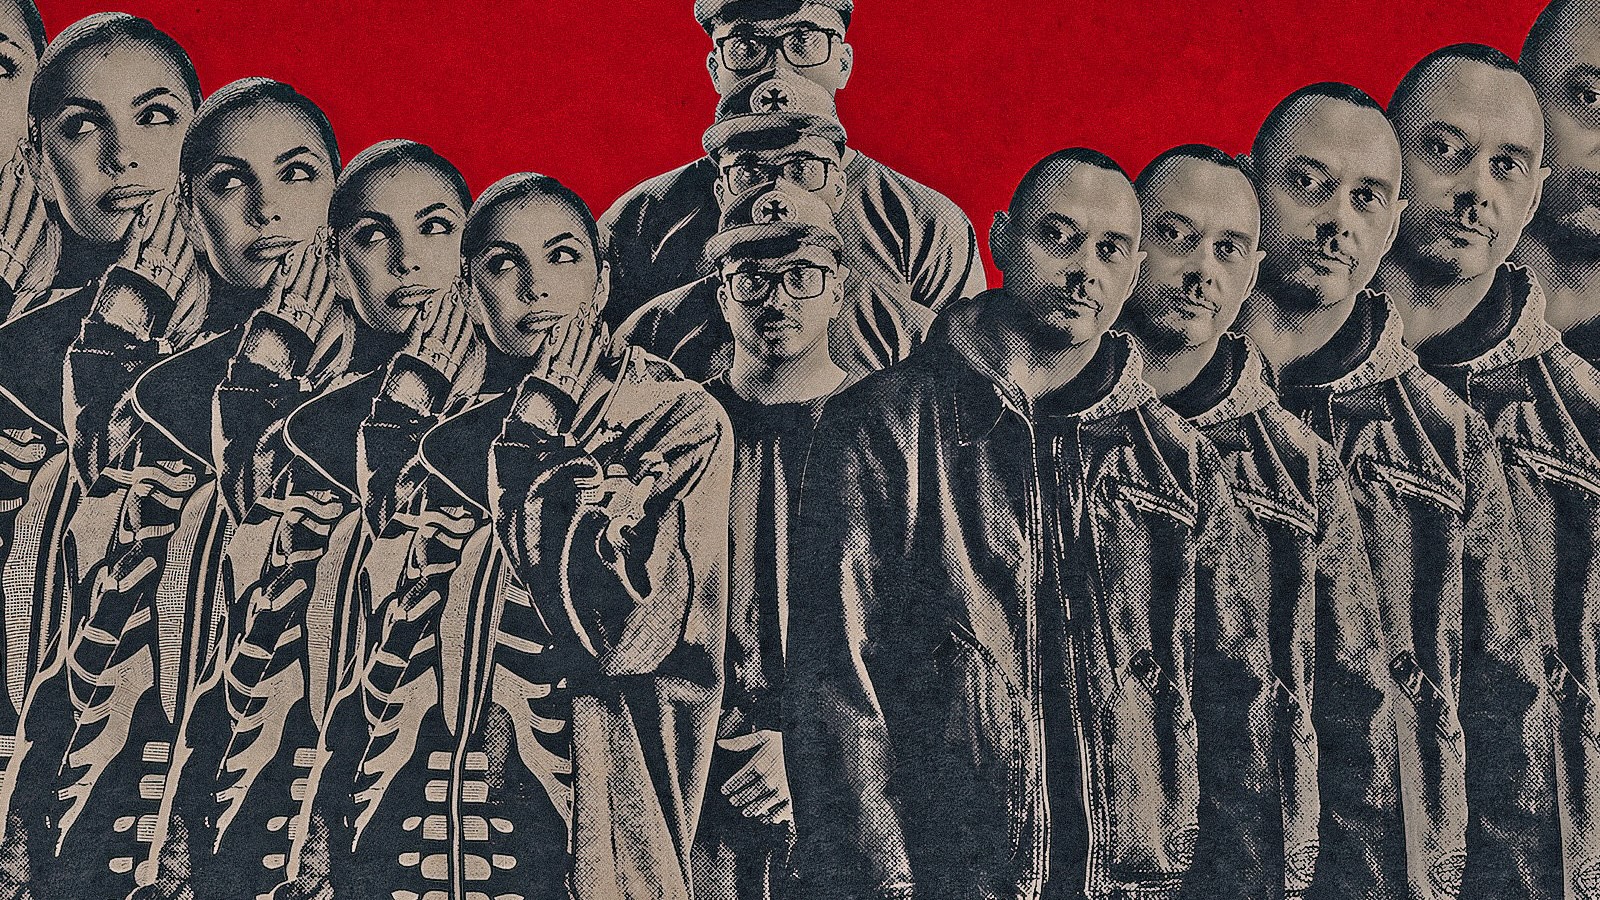 Nuova Scena, su Netflix va in scena una rivoluzione a tempo di rap